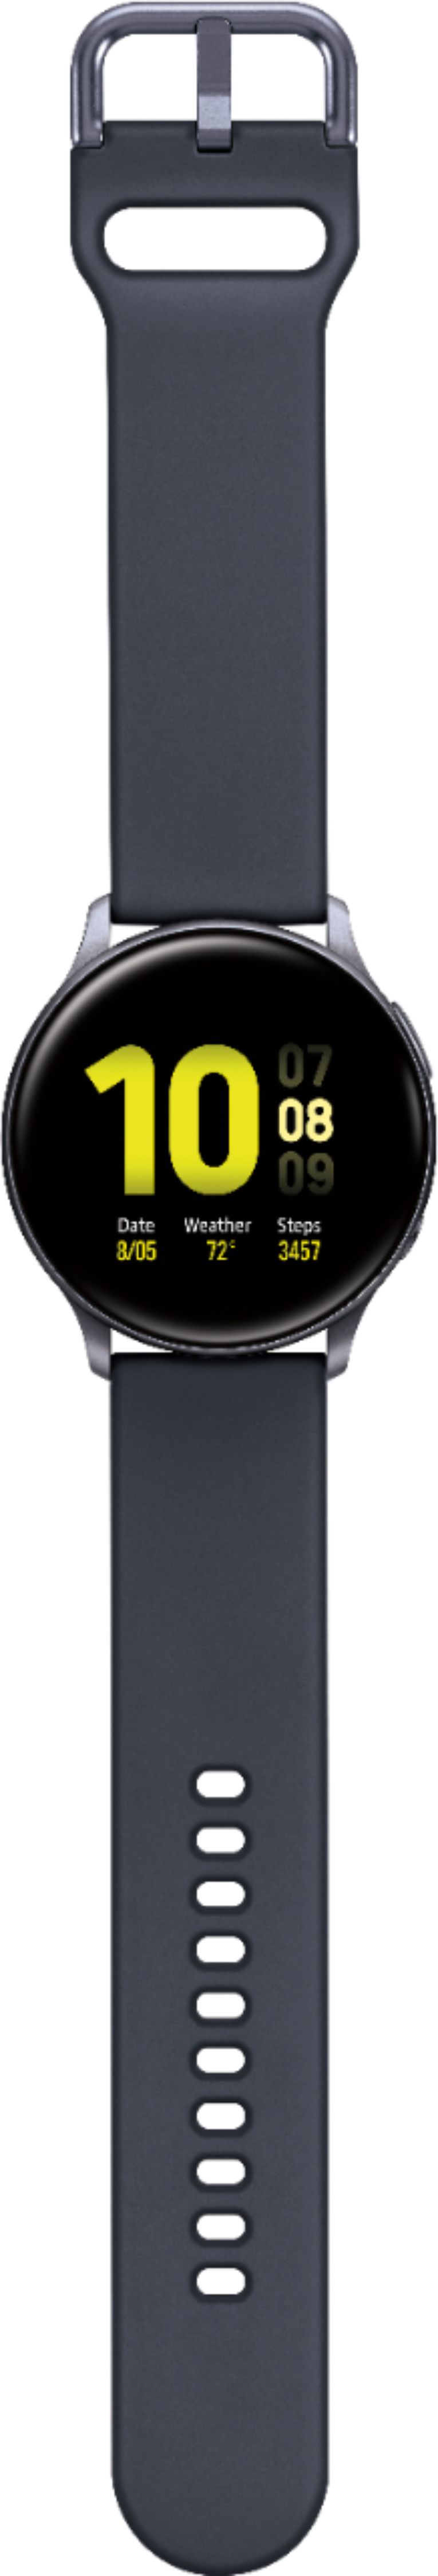 Samsung Galaxy Watch Active2 Golf Edition 40mm BT Pink SM-R830NZDGGFU -  Best Buy